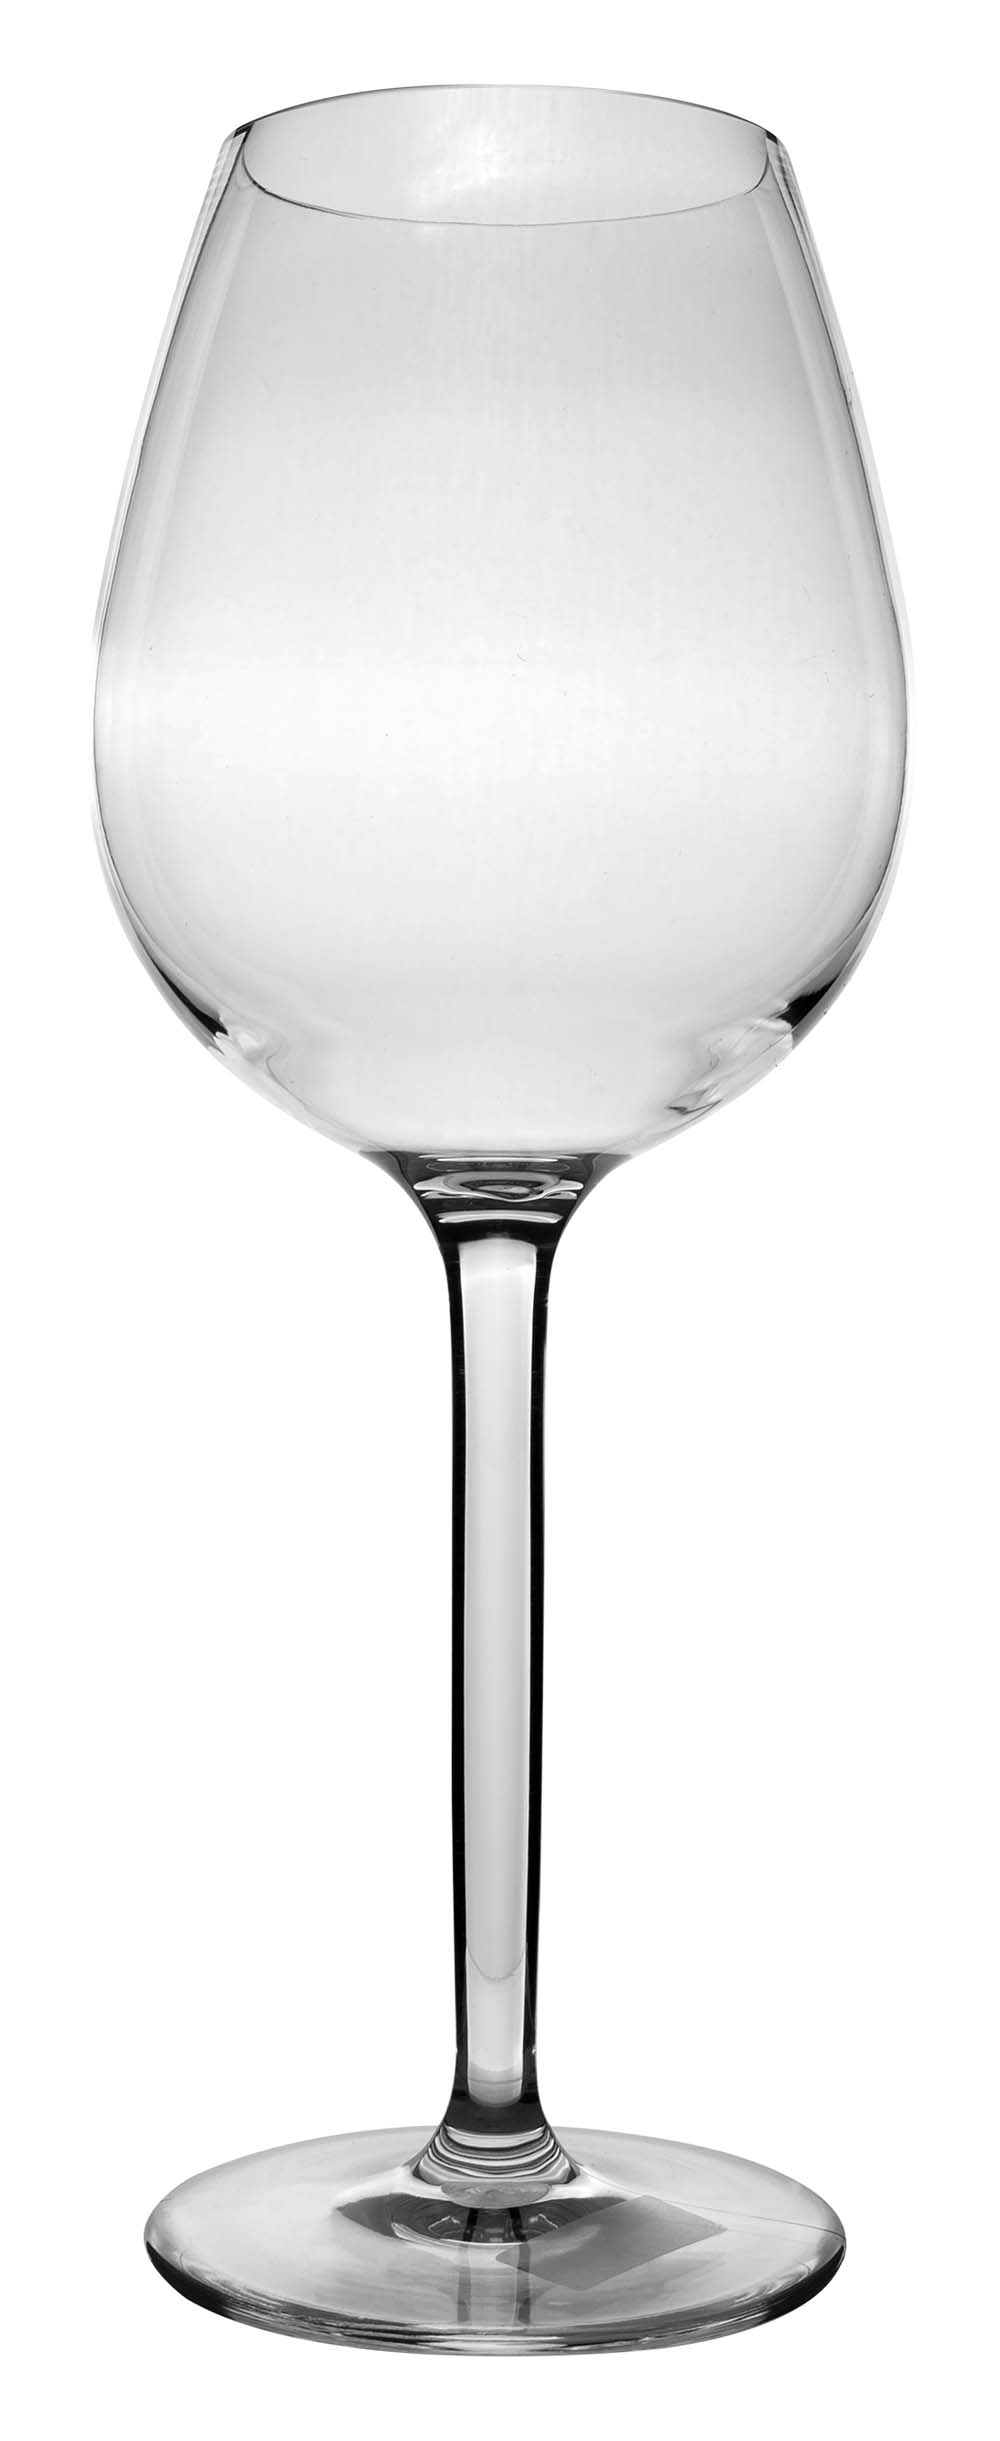 6101465 Ein besonders solides und luxuriöses Rotweinglas-Set. Aus 100 % Tritan. Das macht die Gläser nahezu unzerbrechlich, leicht und kratzbeständig. Auch dieses Glas ist spülmaschinenfest. Verpackung mit 2 Stück. Das Glas ist BPA-frei.